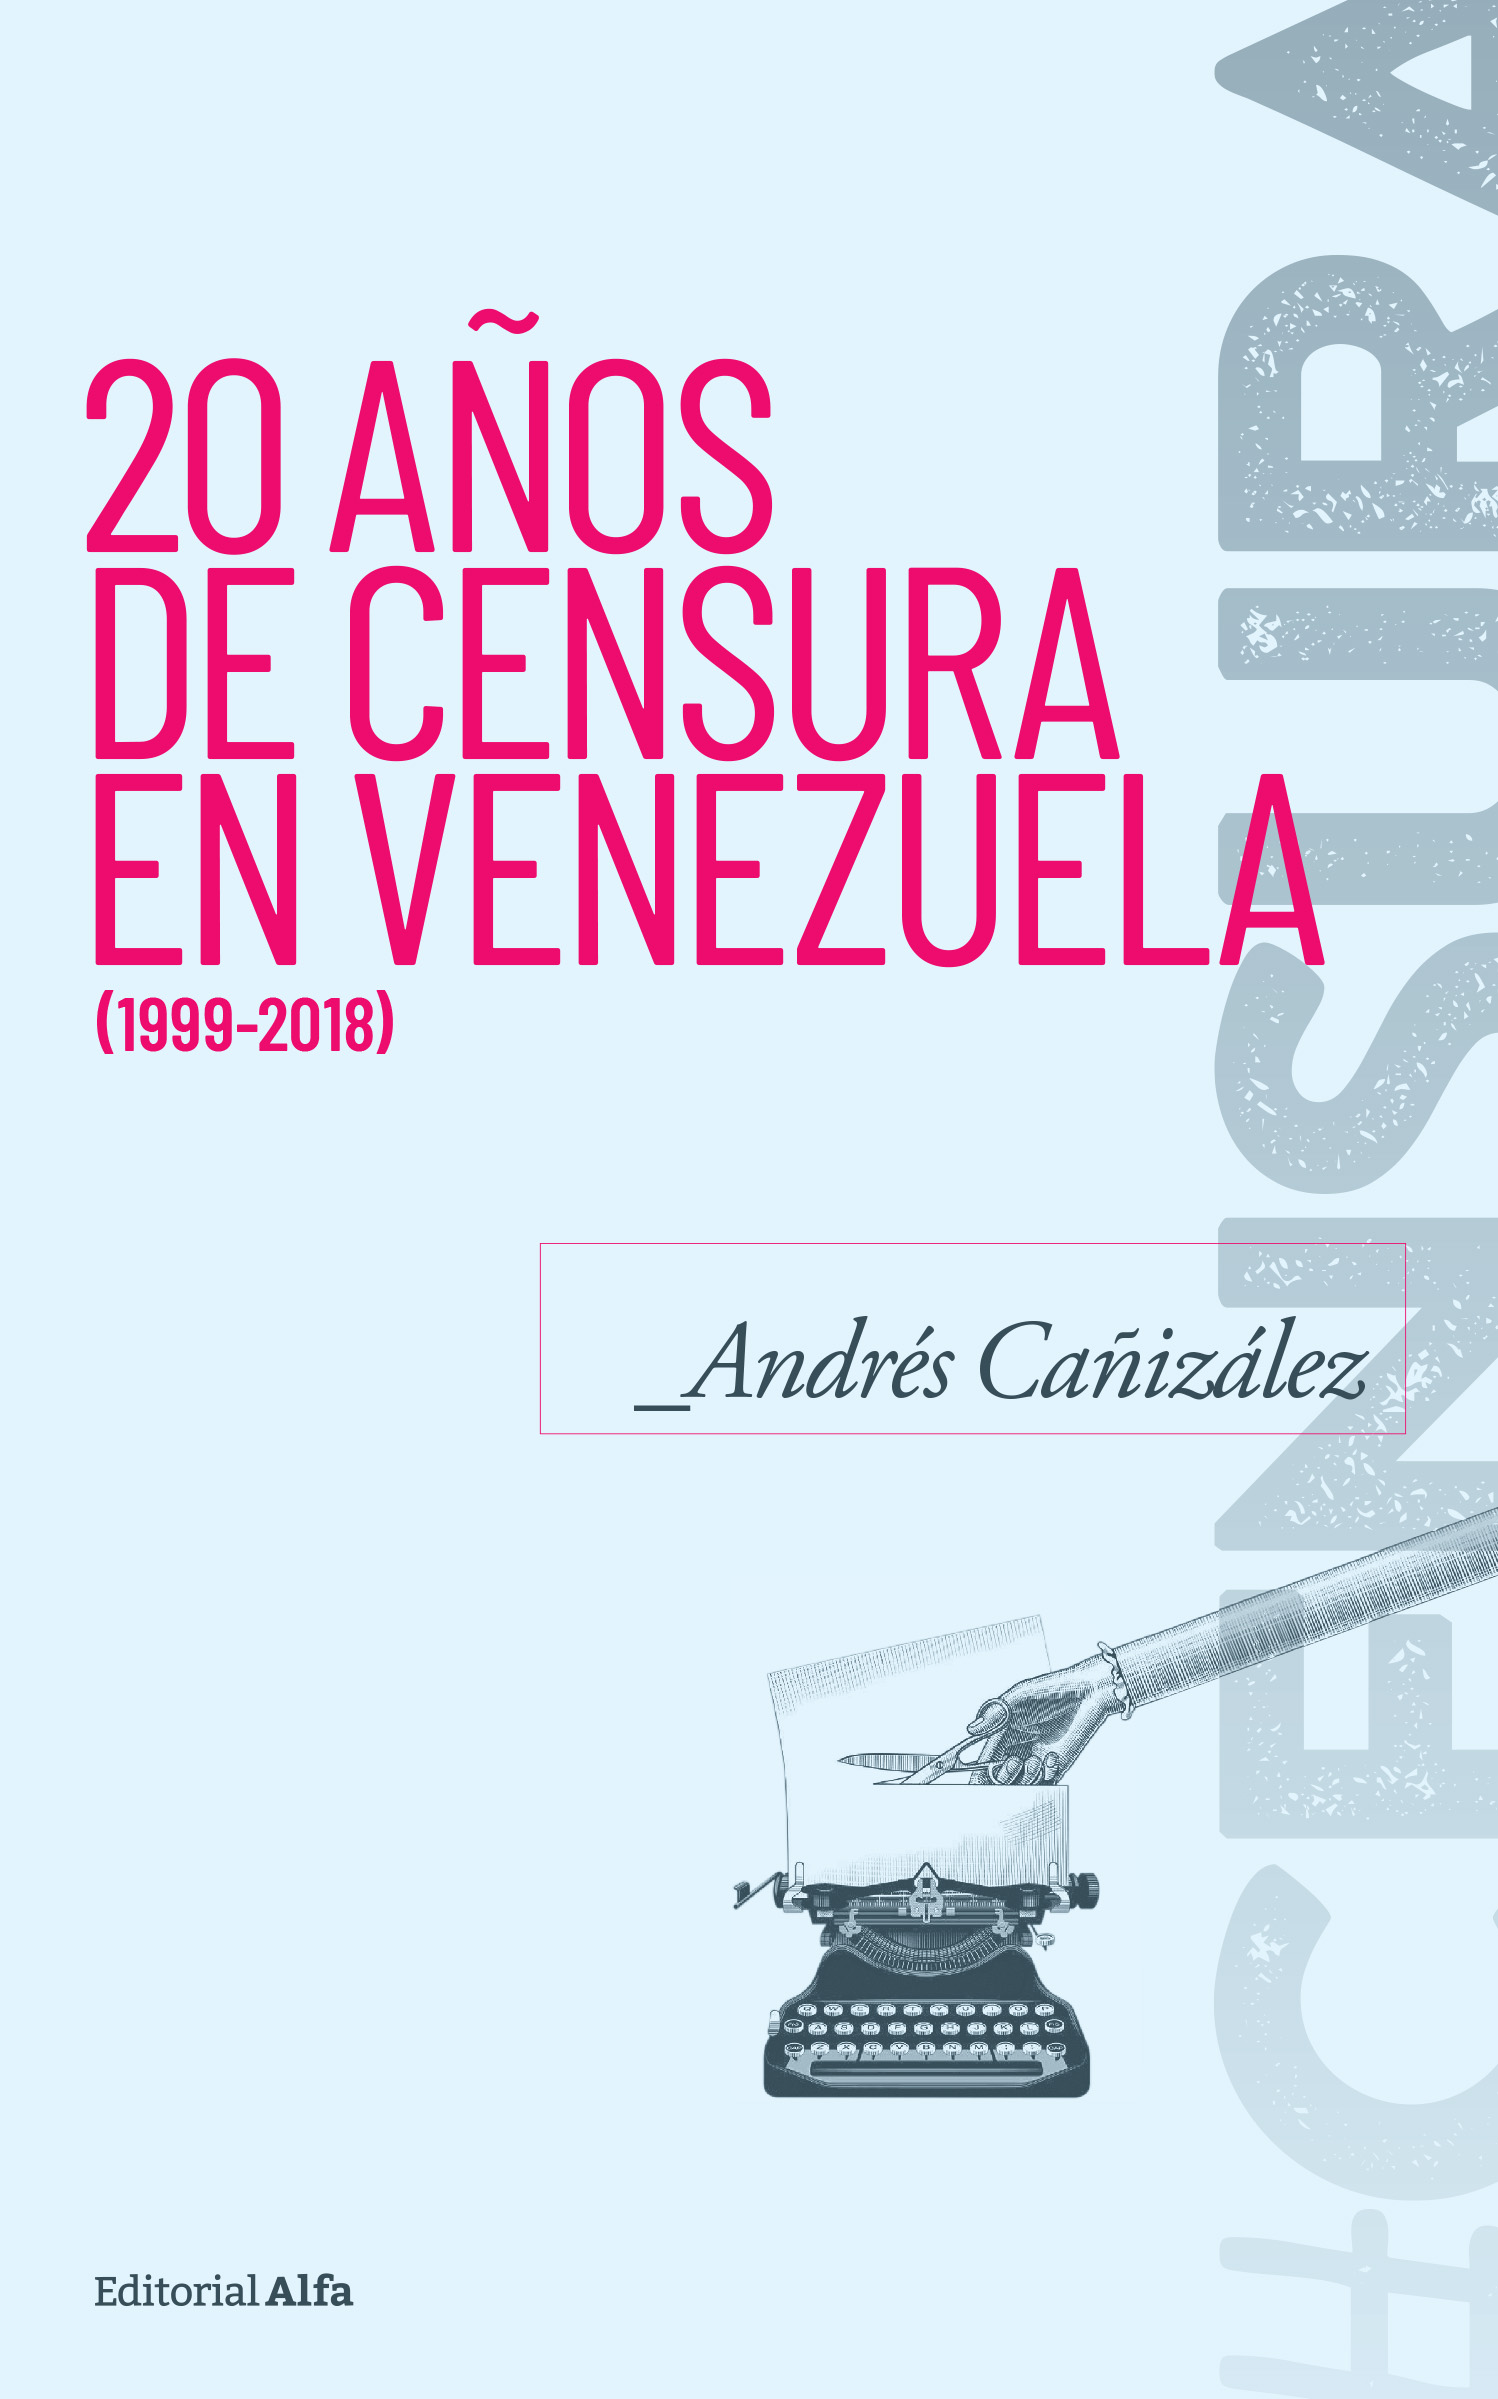 Libro “20 años de censura en Venezuela (1999-2018)”